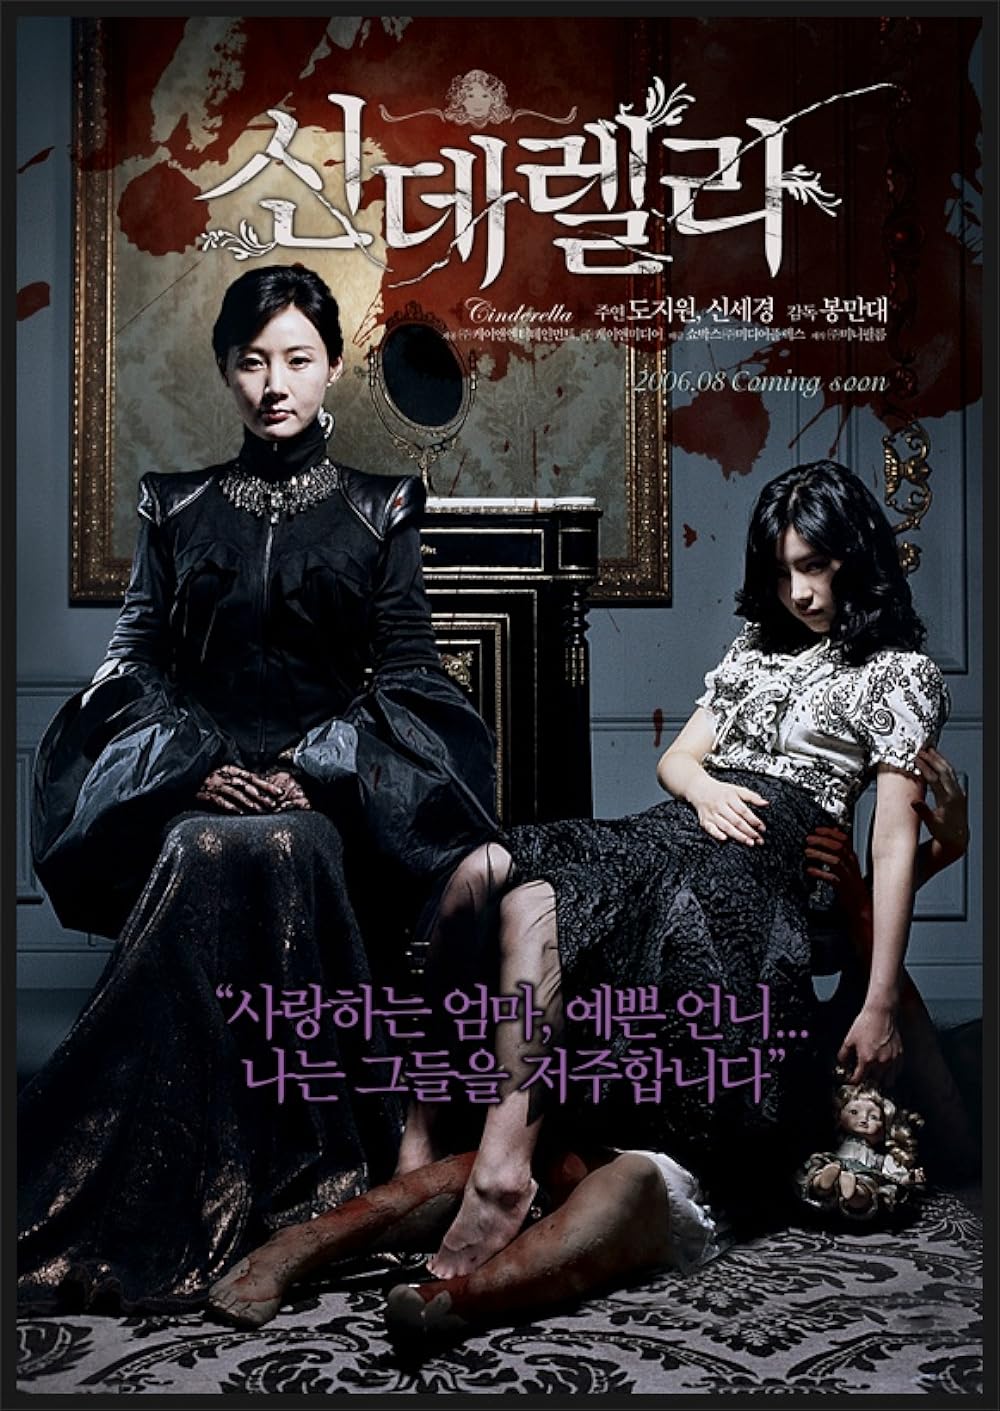 Top phim kinh dị Hàn Quốc: Gương mặt mày fake - Cinderella (2006)